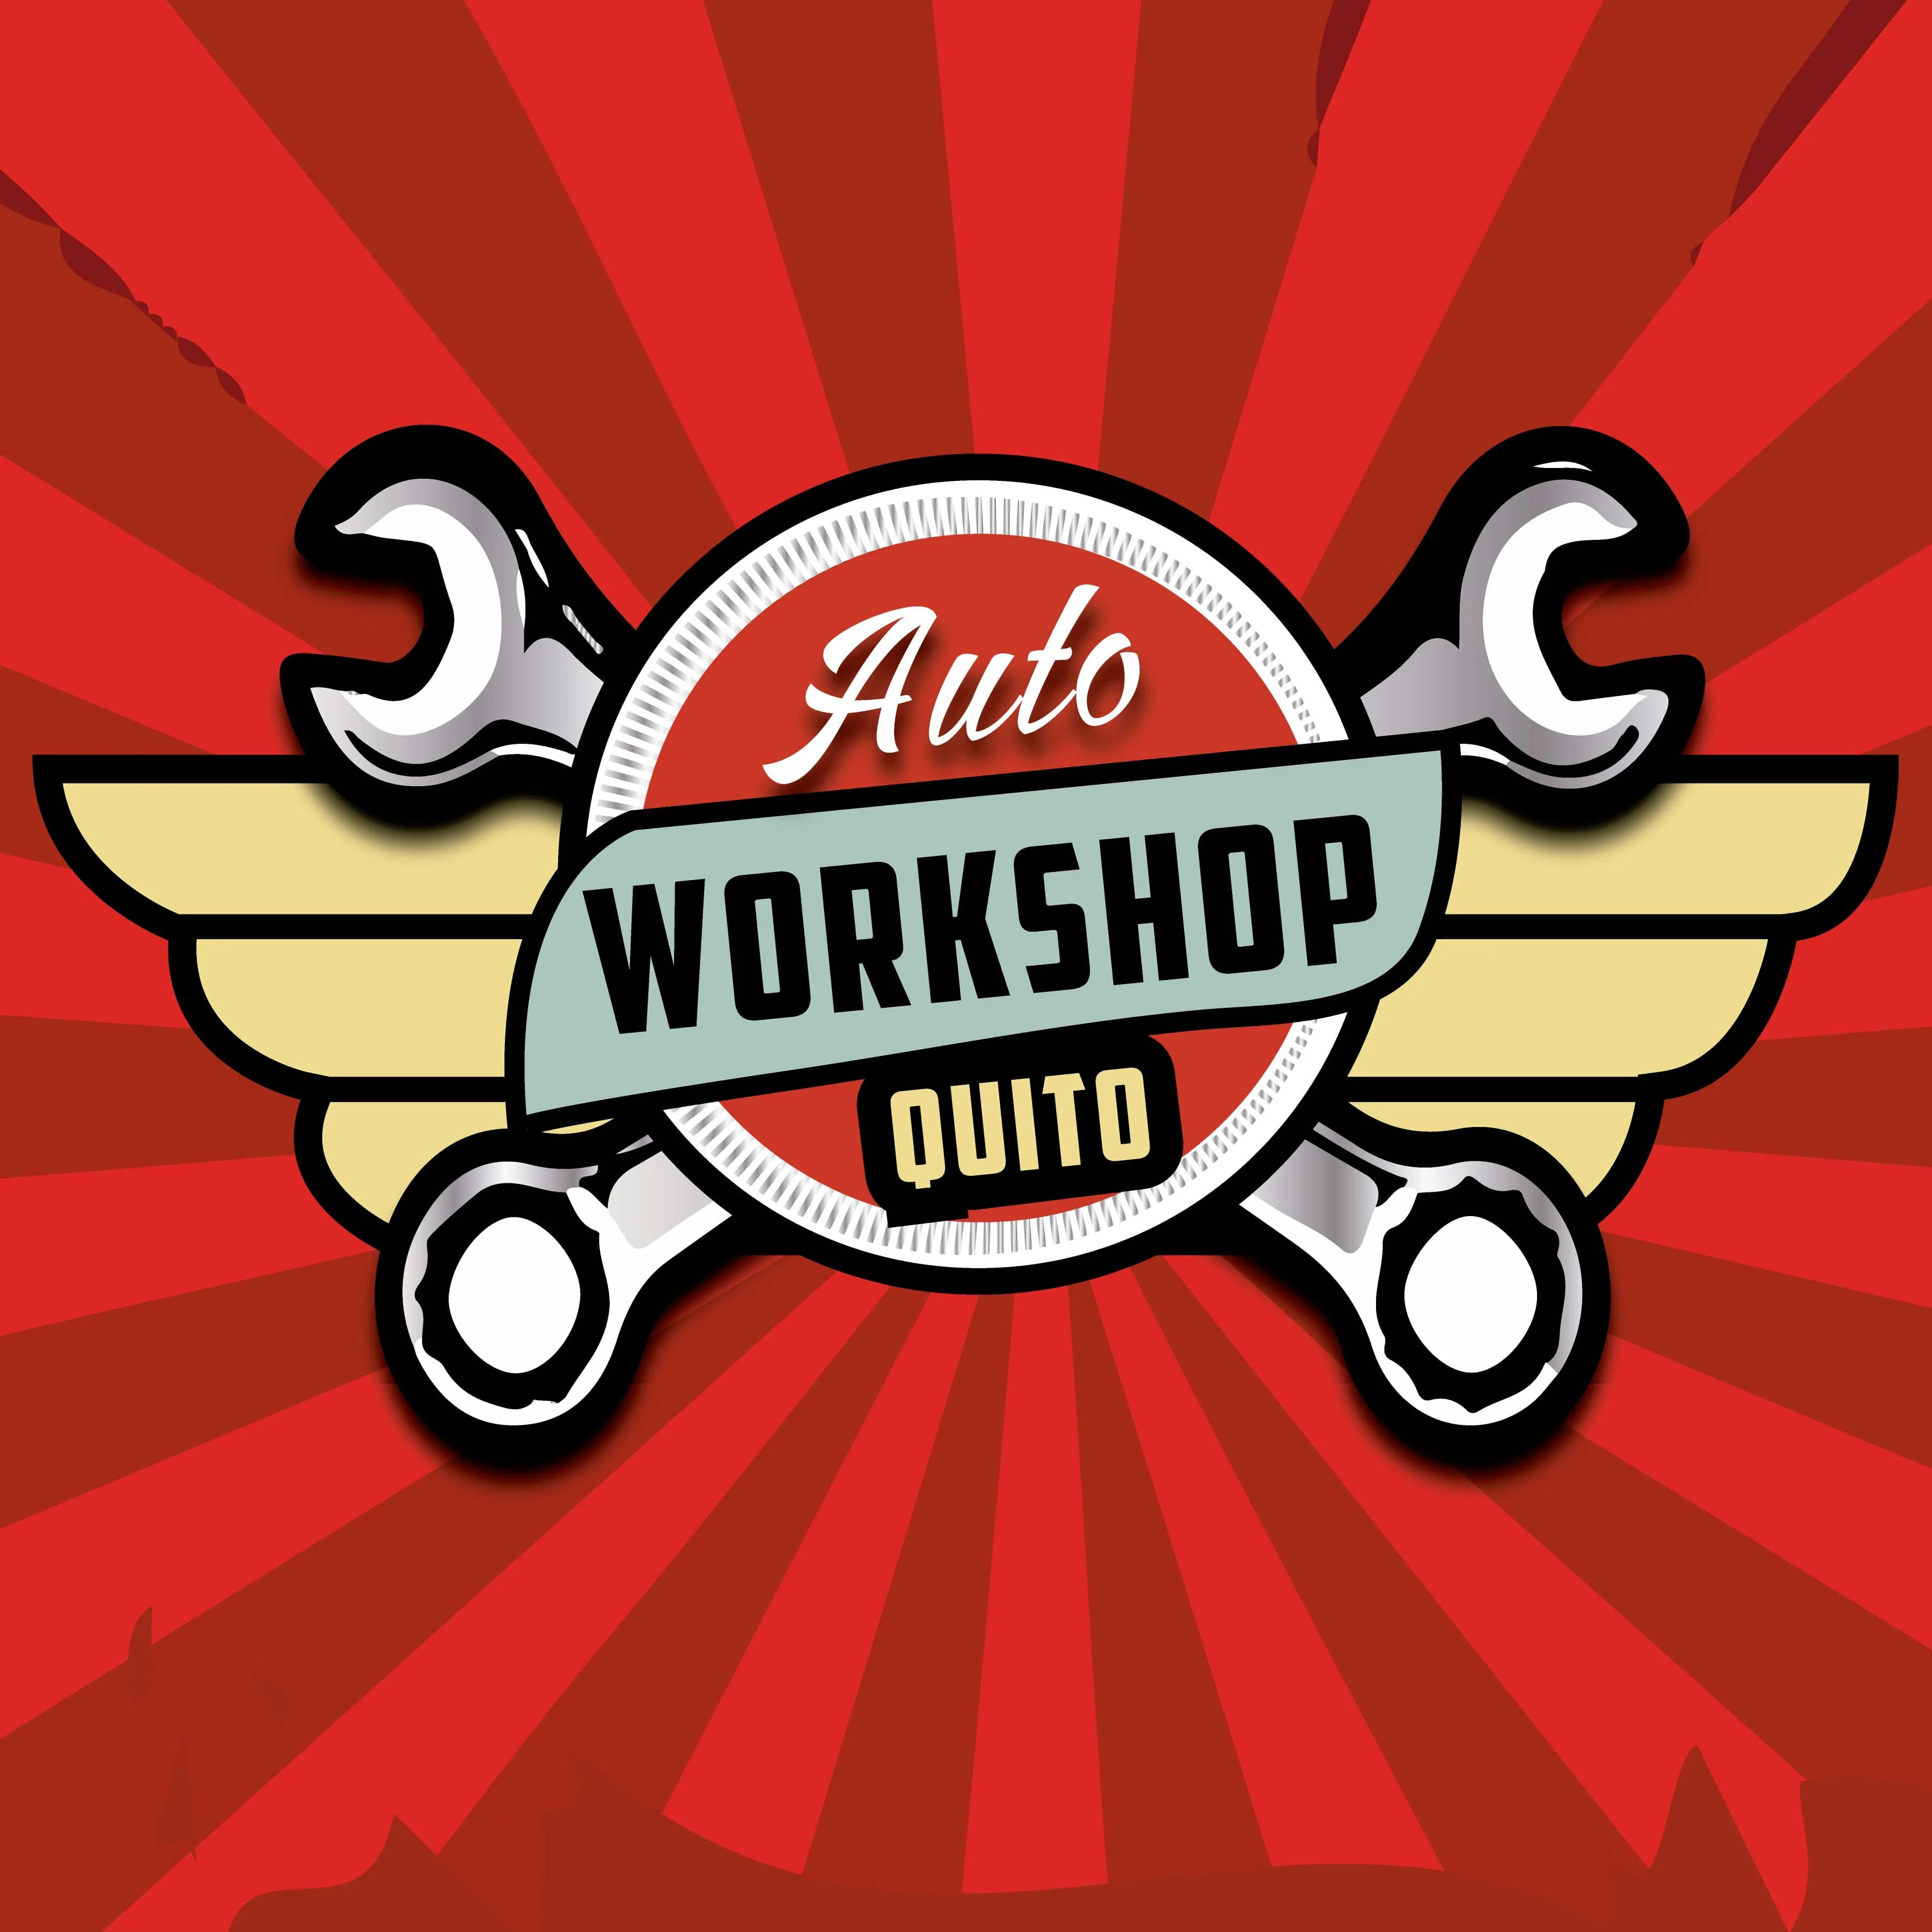 Auto Workshop Quito-2836